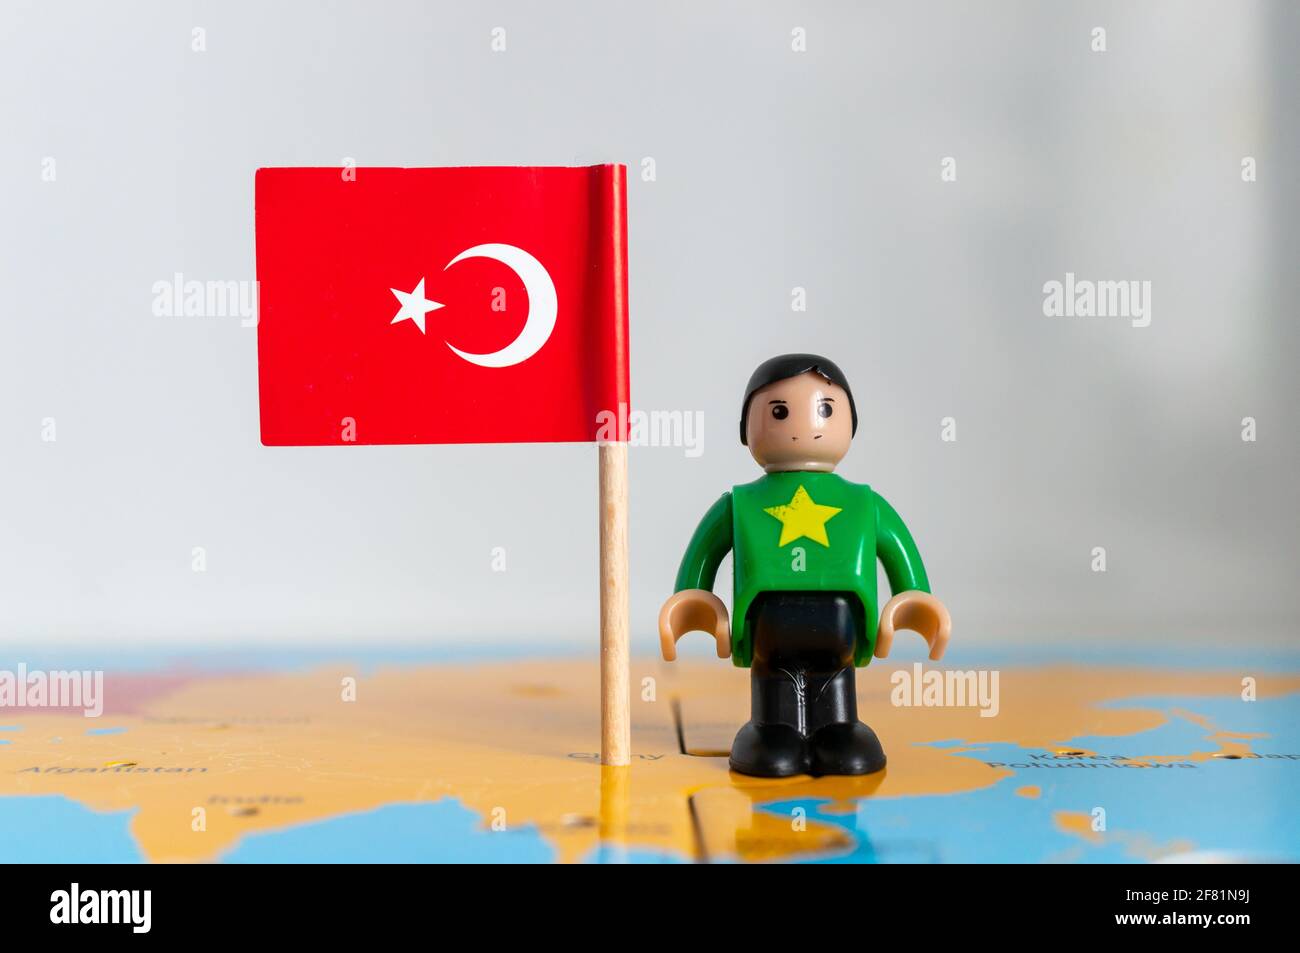 POZNAN, POLONIA - 06 aprile 2021: Figurina giocattolo giocante in piedi accanto ad una bandiera nazionale turca. Foto Stock